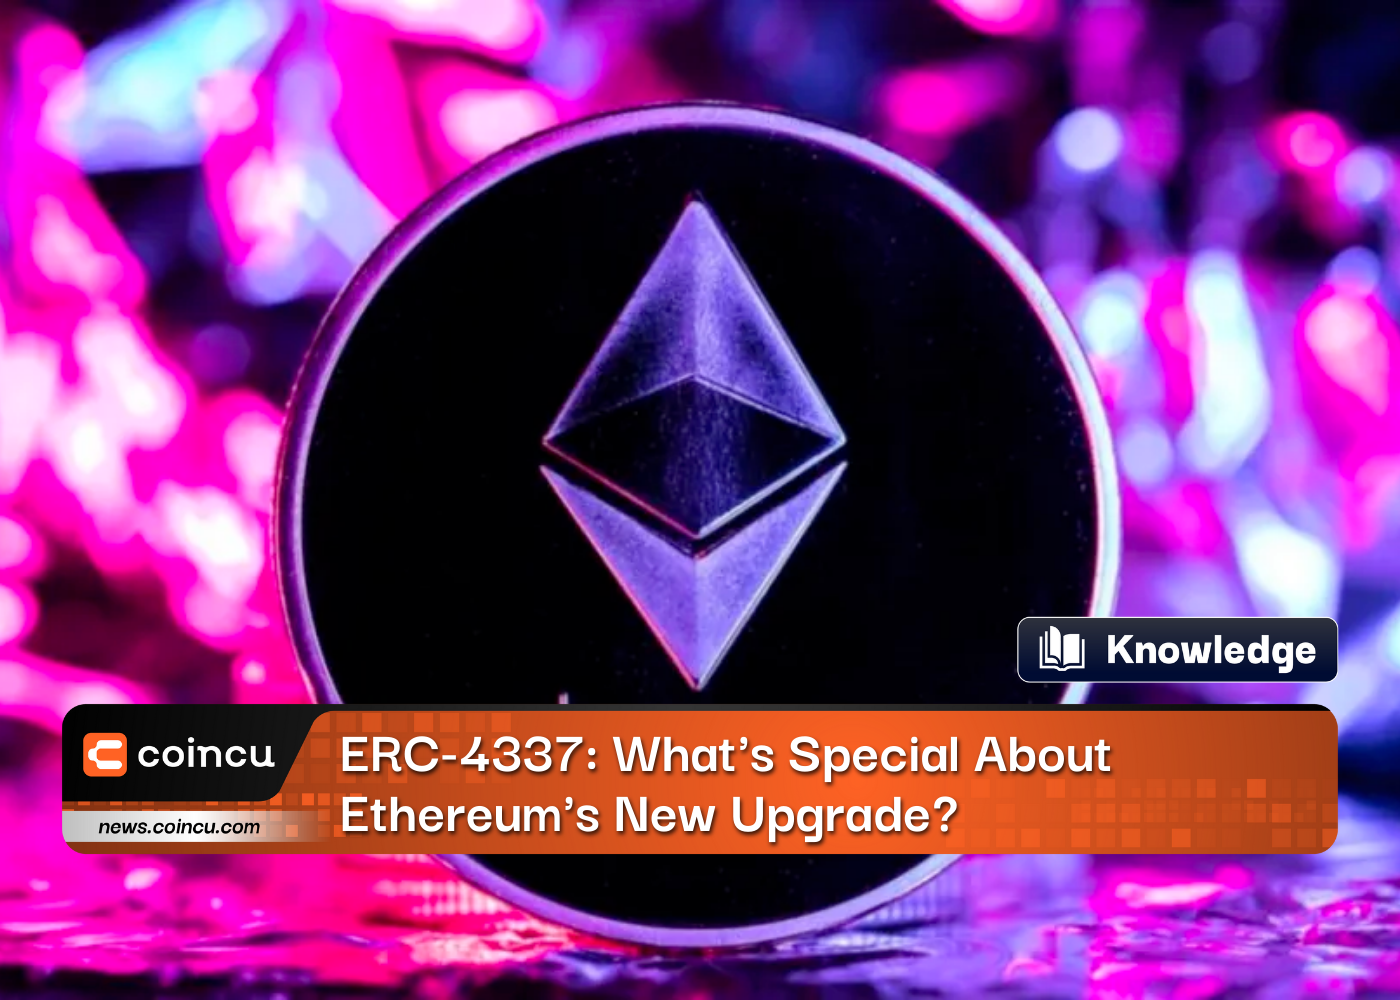 ERC-4337: Bản nâng cấp mới của Ethereum có gì đặc biệt?